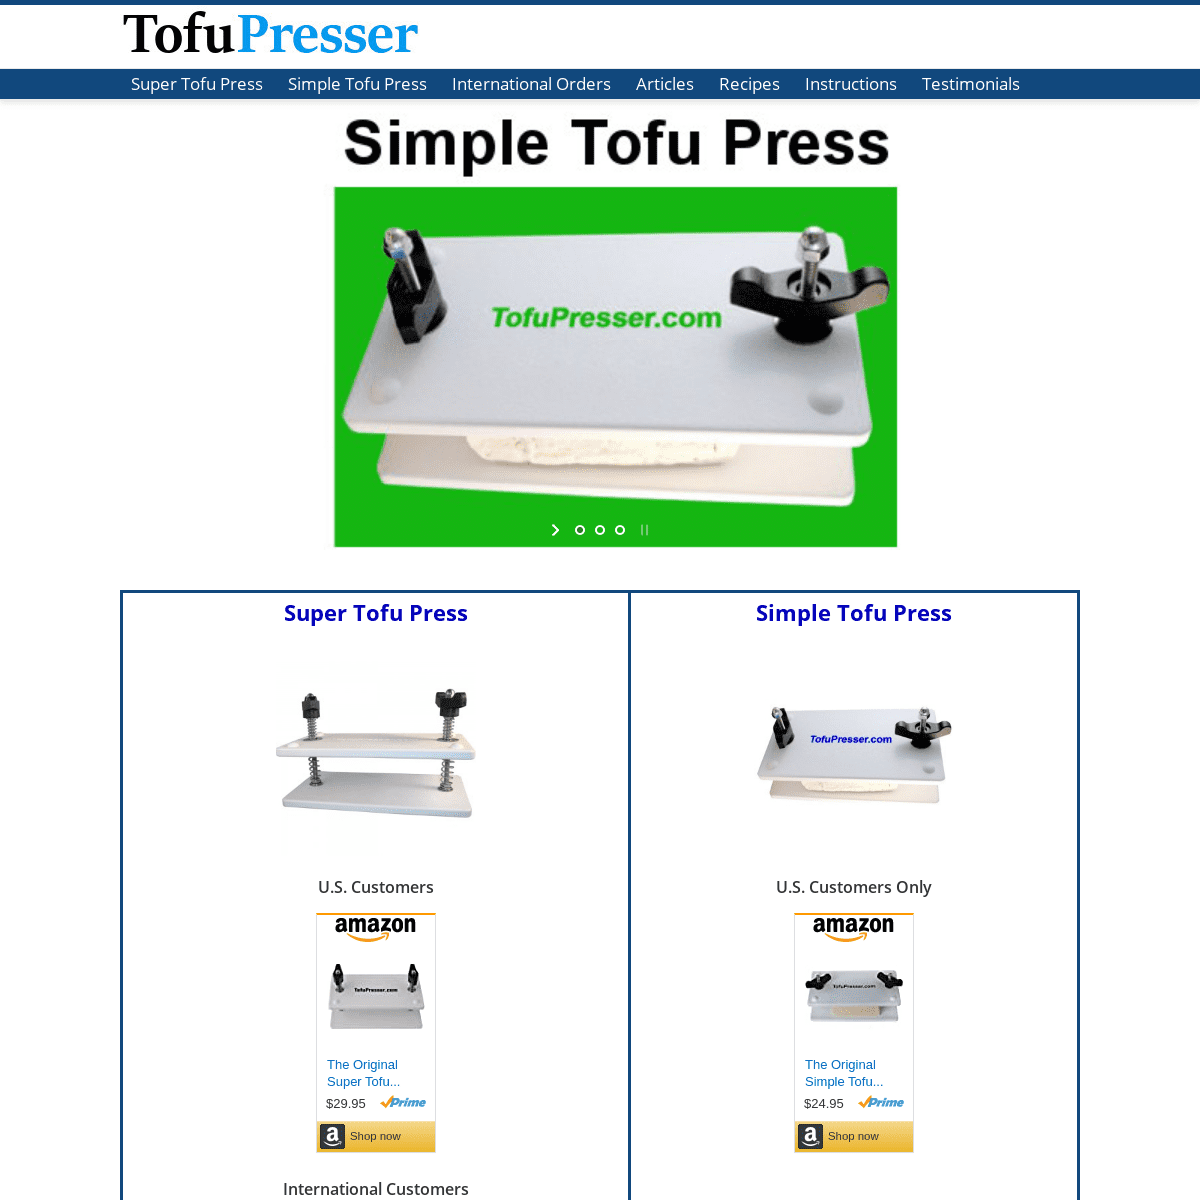 A complete backup of tofupresser.com